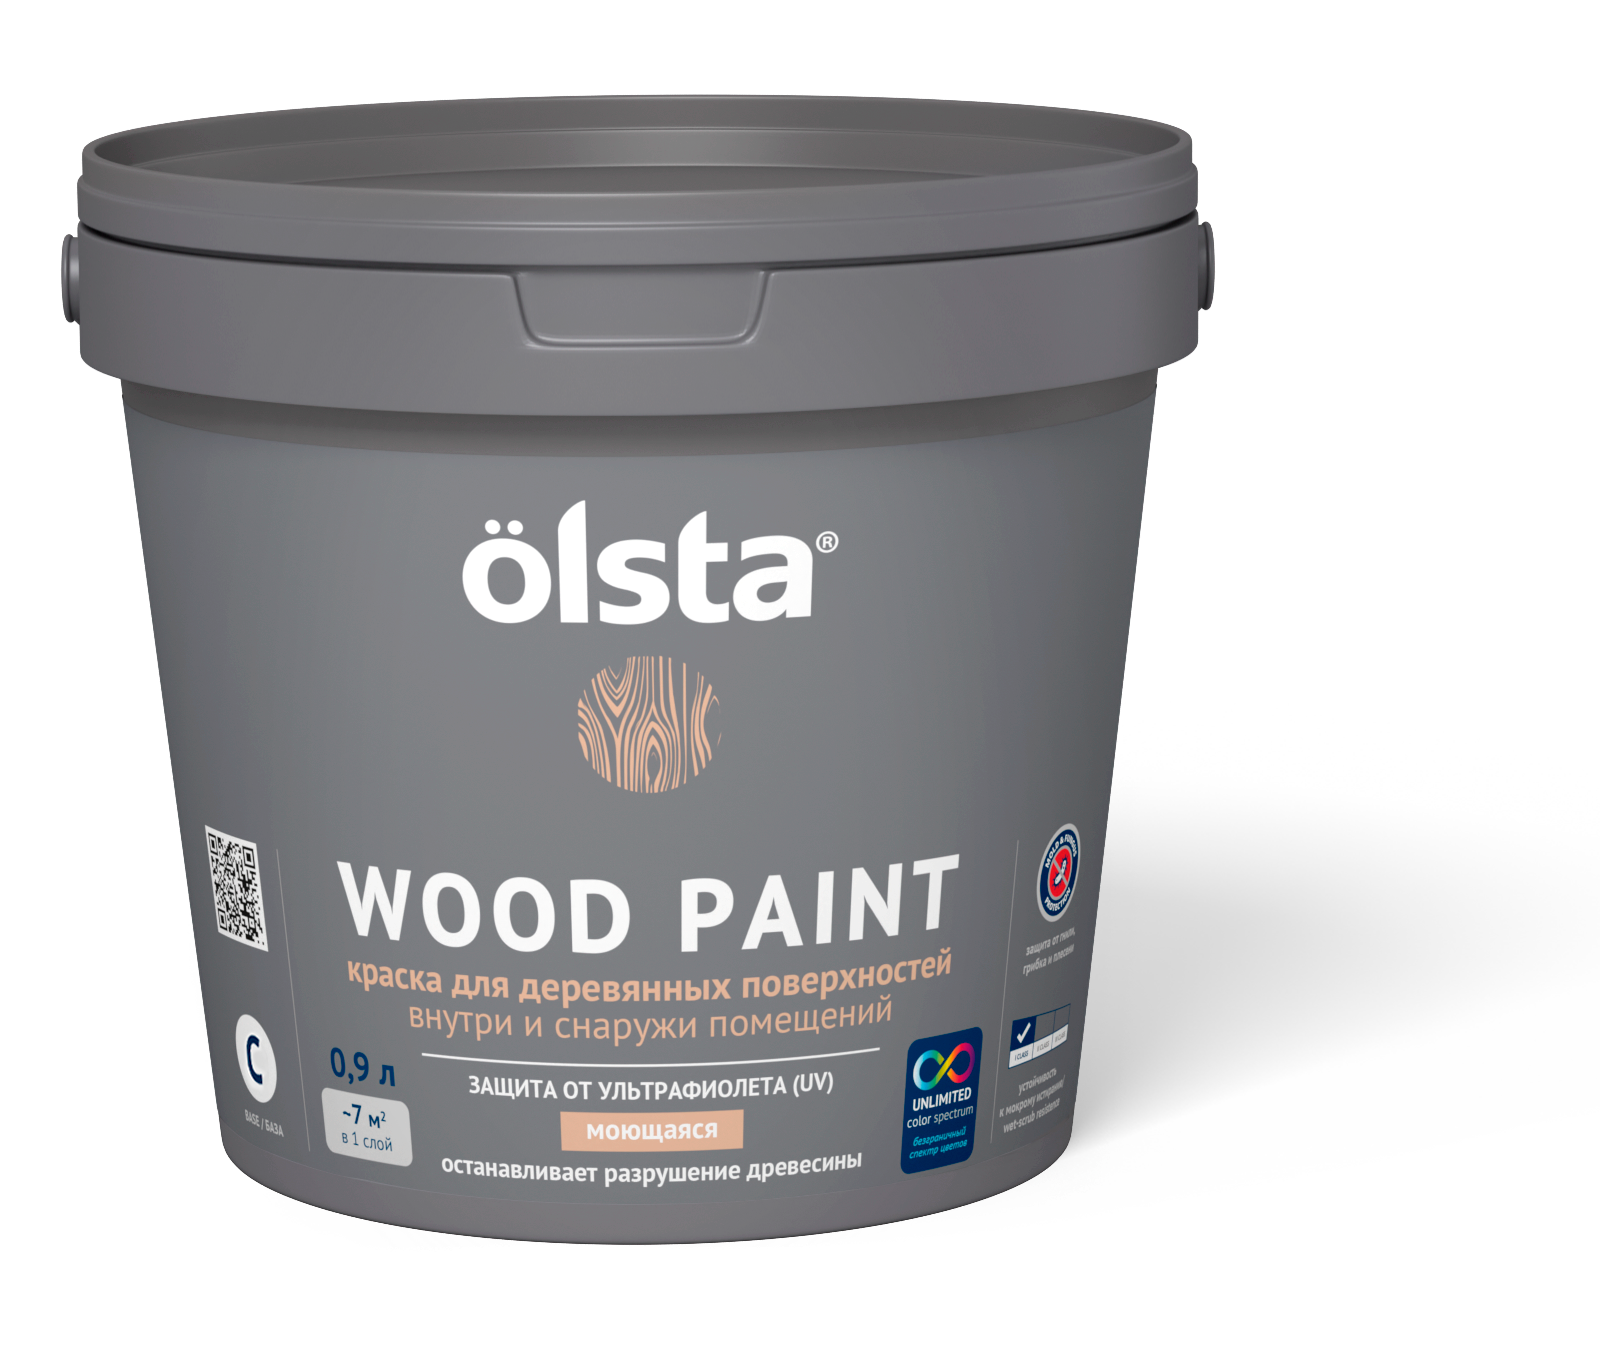 Краска Olsta wood paint для дерева a 9.0 л - фото №8